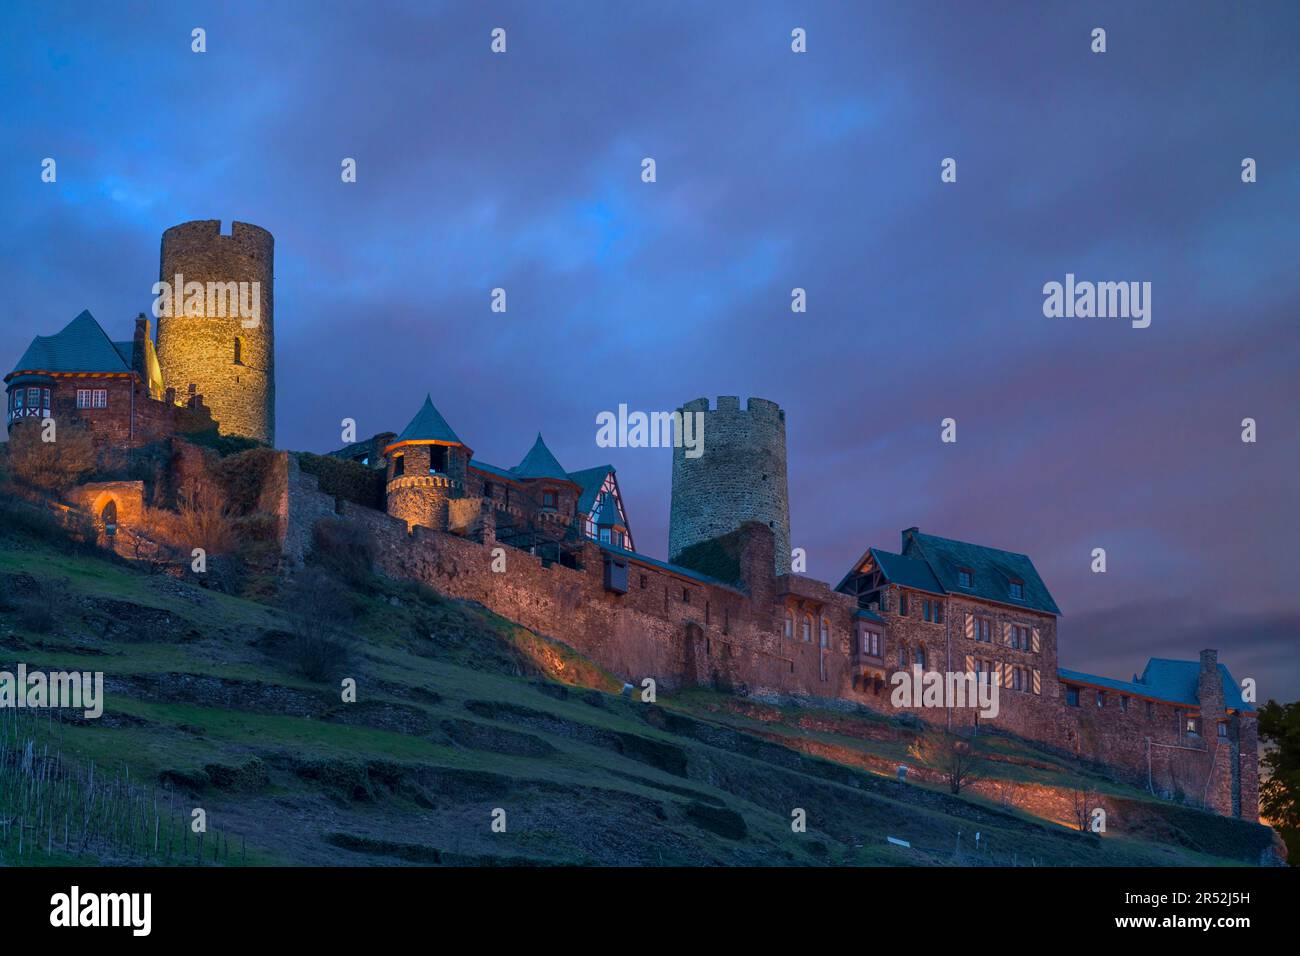 Ancien château de Tdurant dans la lumière du soir, Alken sur la Moselle, Rhénanie-Palatinat, Allemagne Banque D'Images